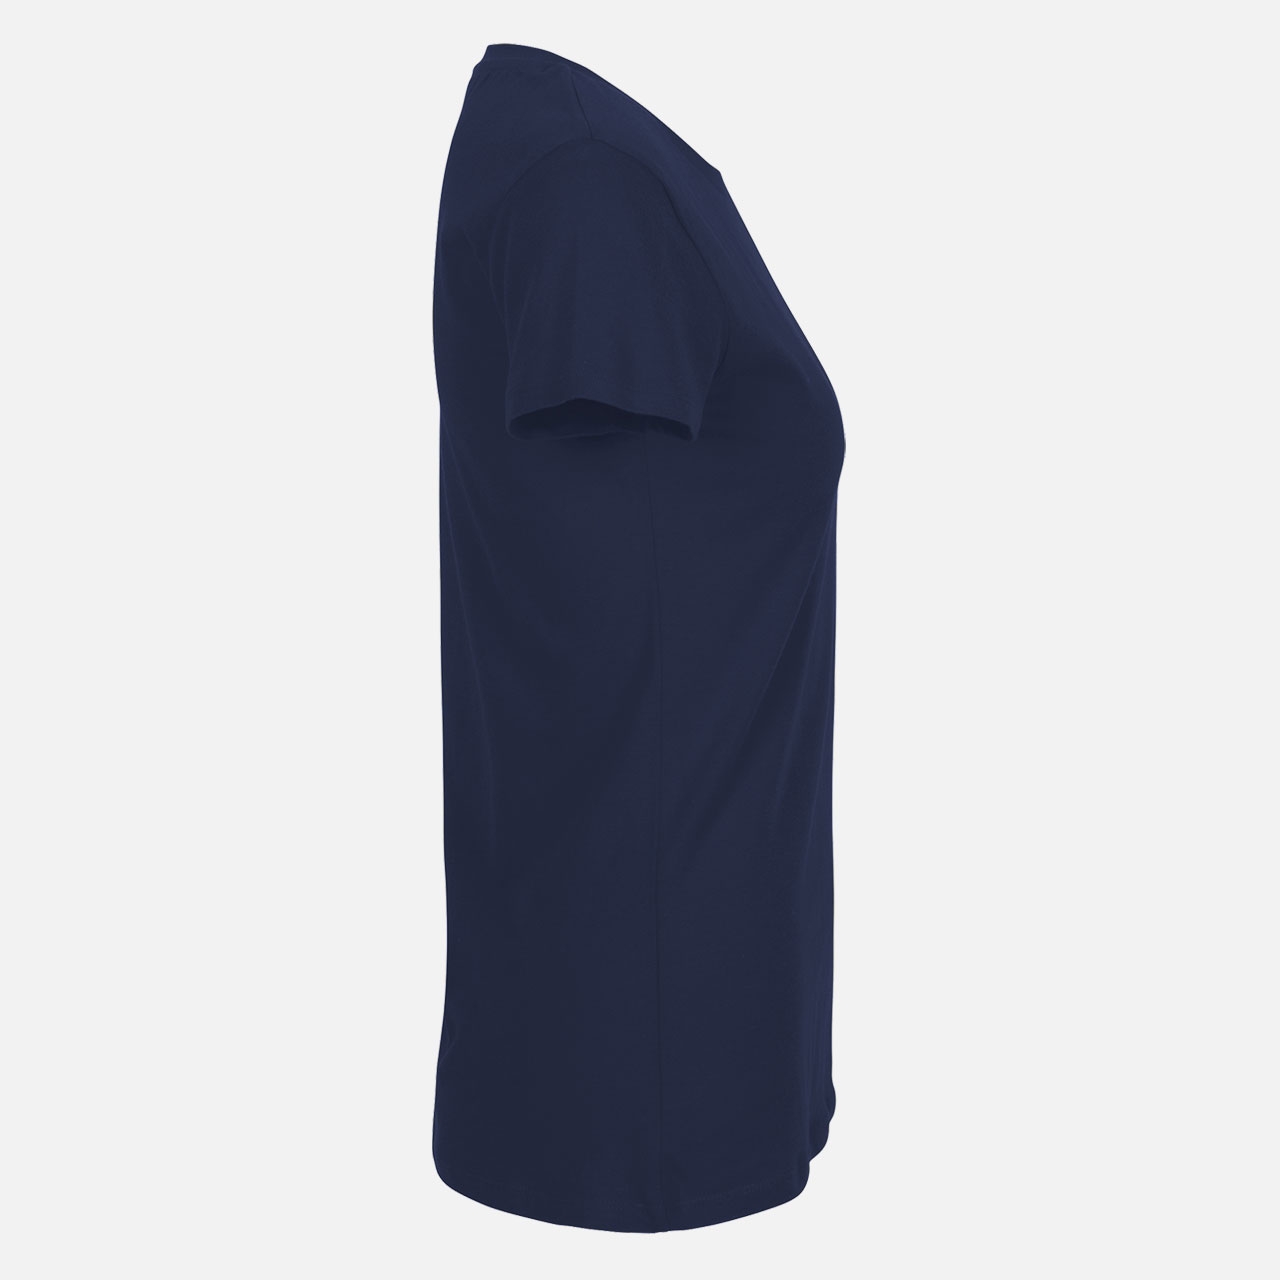 Neutral® Ladies Fit T-Shirt - Bio-Baumwolle Navy Navy M